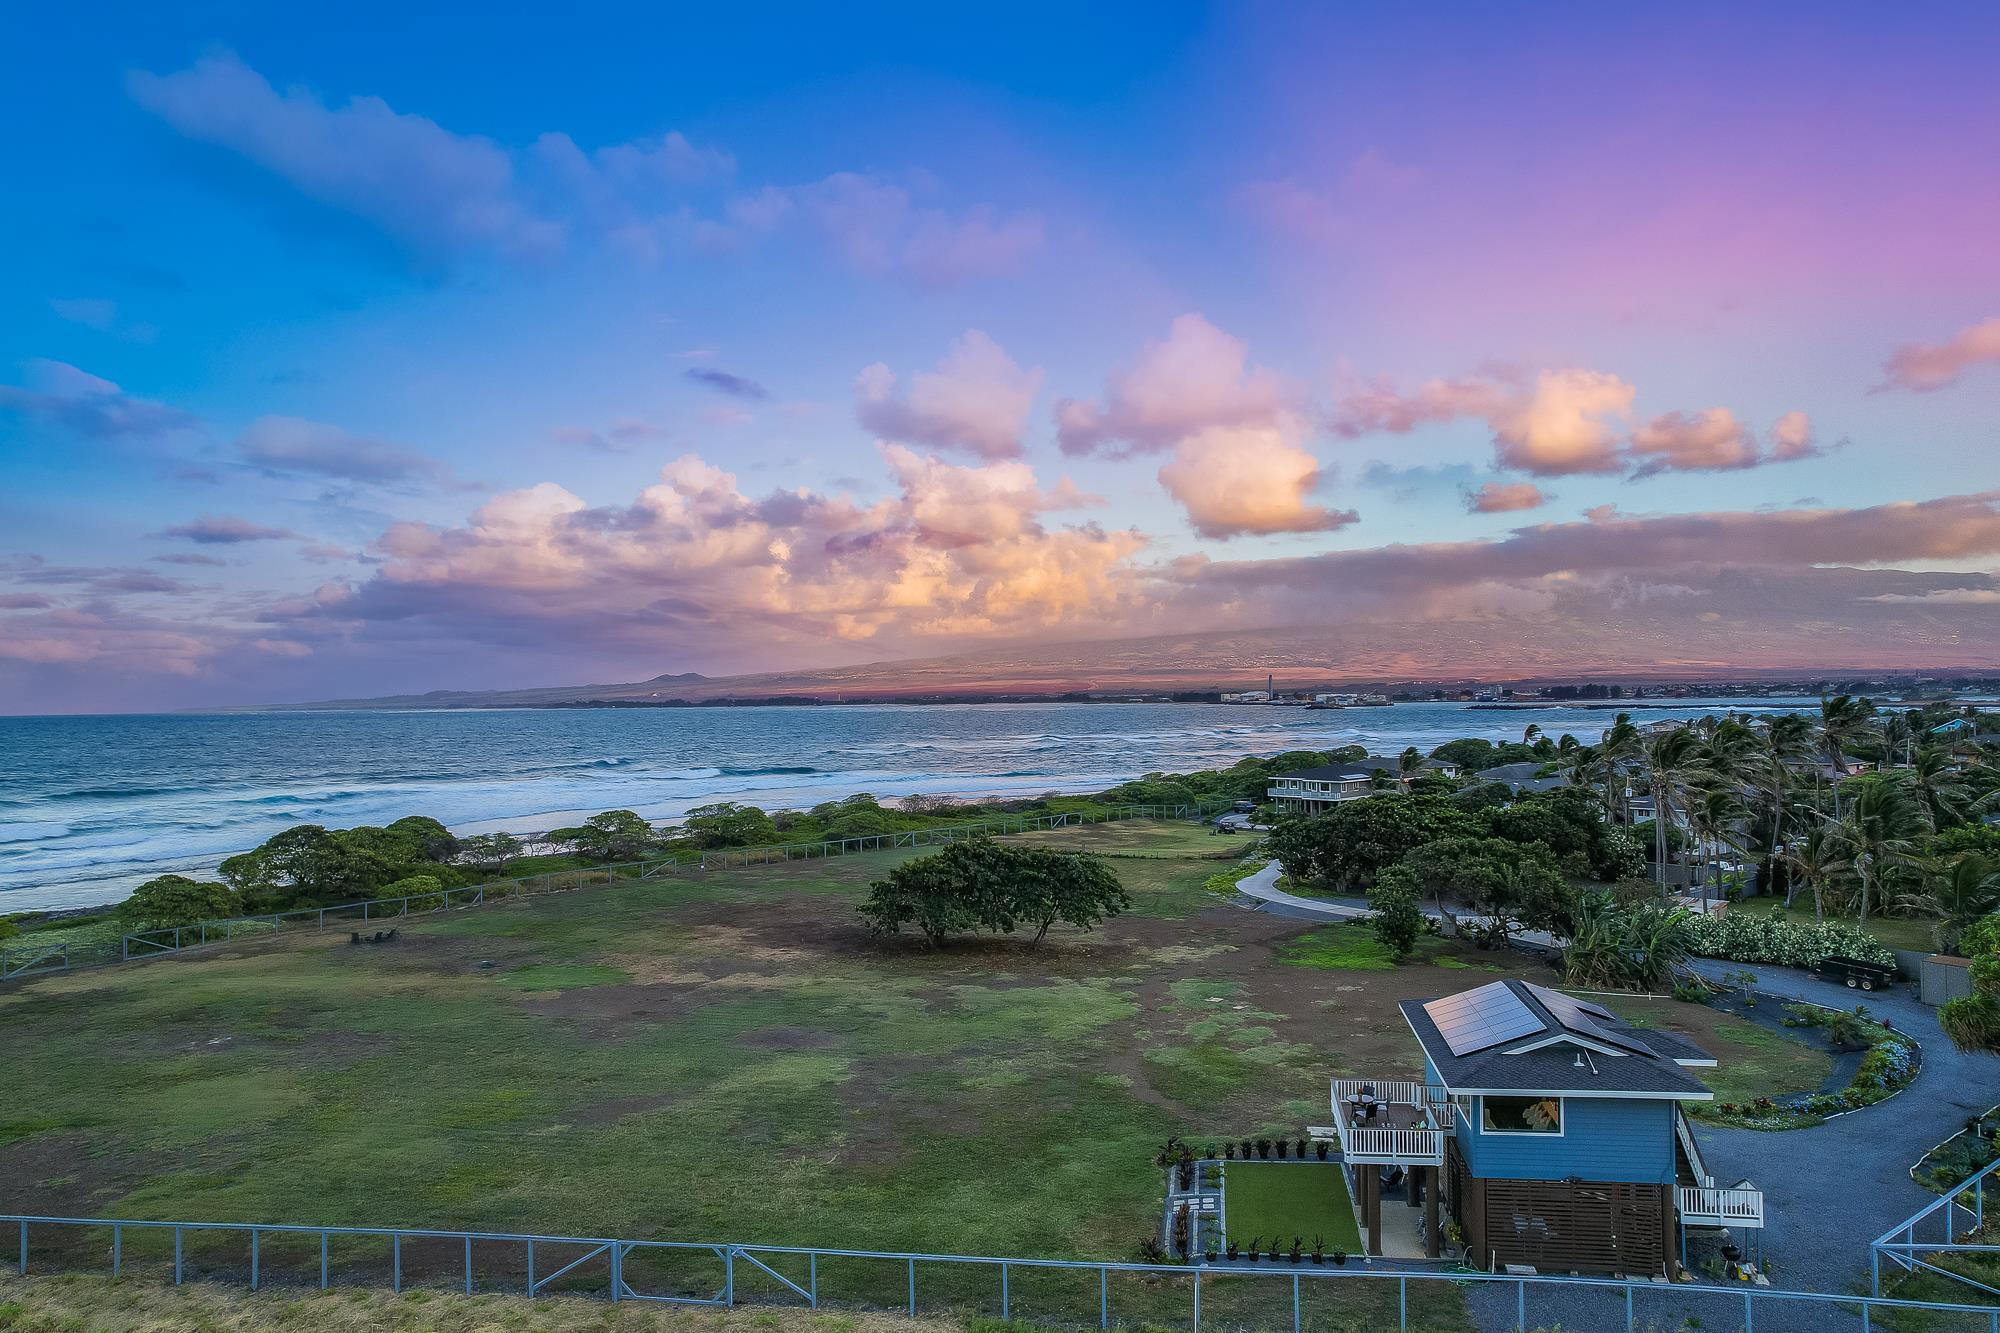 La propriété de 4.5 acres en bord de mer à Maui atteint le marché pour 5.5 millions de dollars